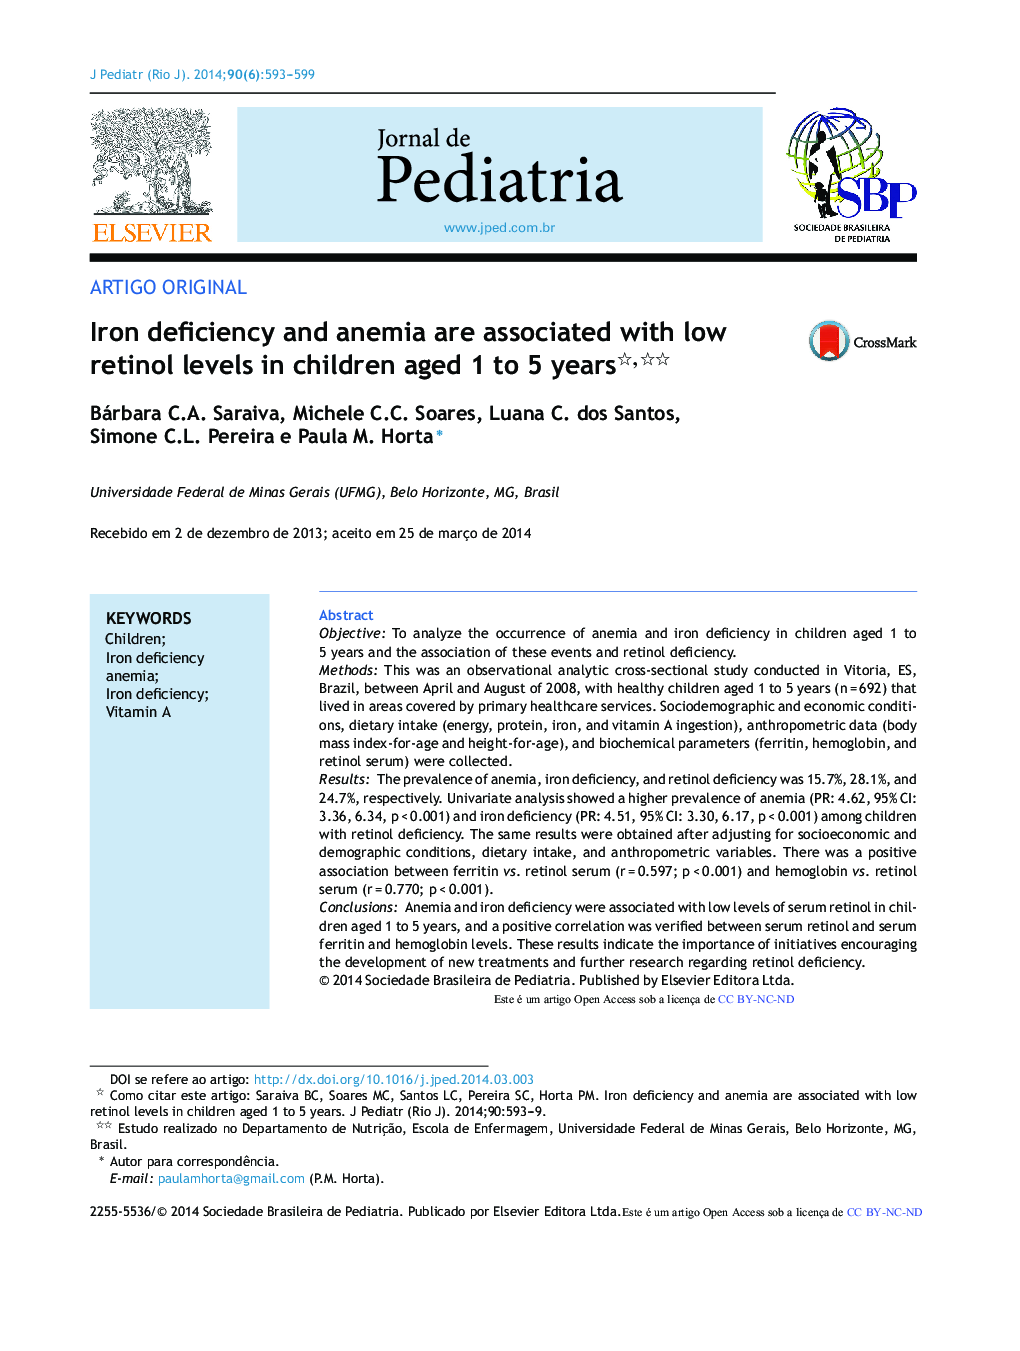 کمبود آهن و کم خونی با سطوح پایین رتینول در کودکان 1 تا 5 ساله ارتباط دارد؟ 